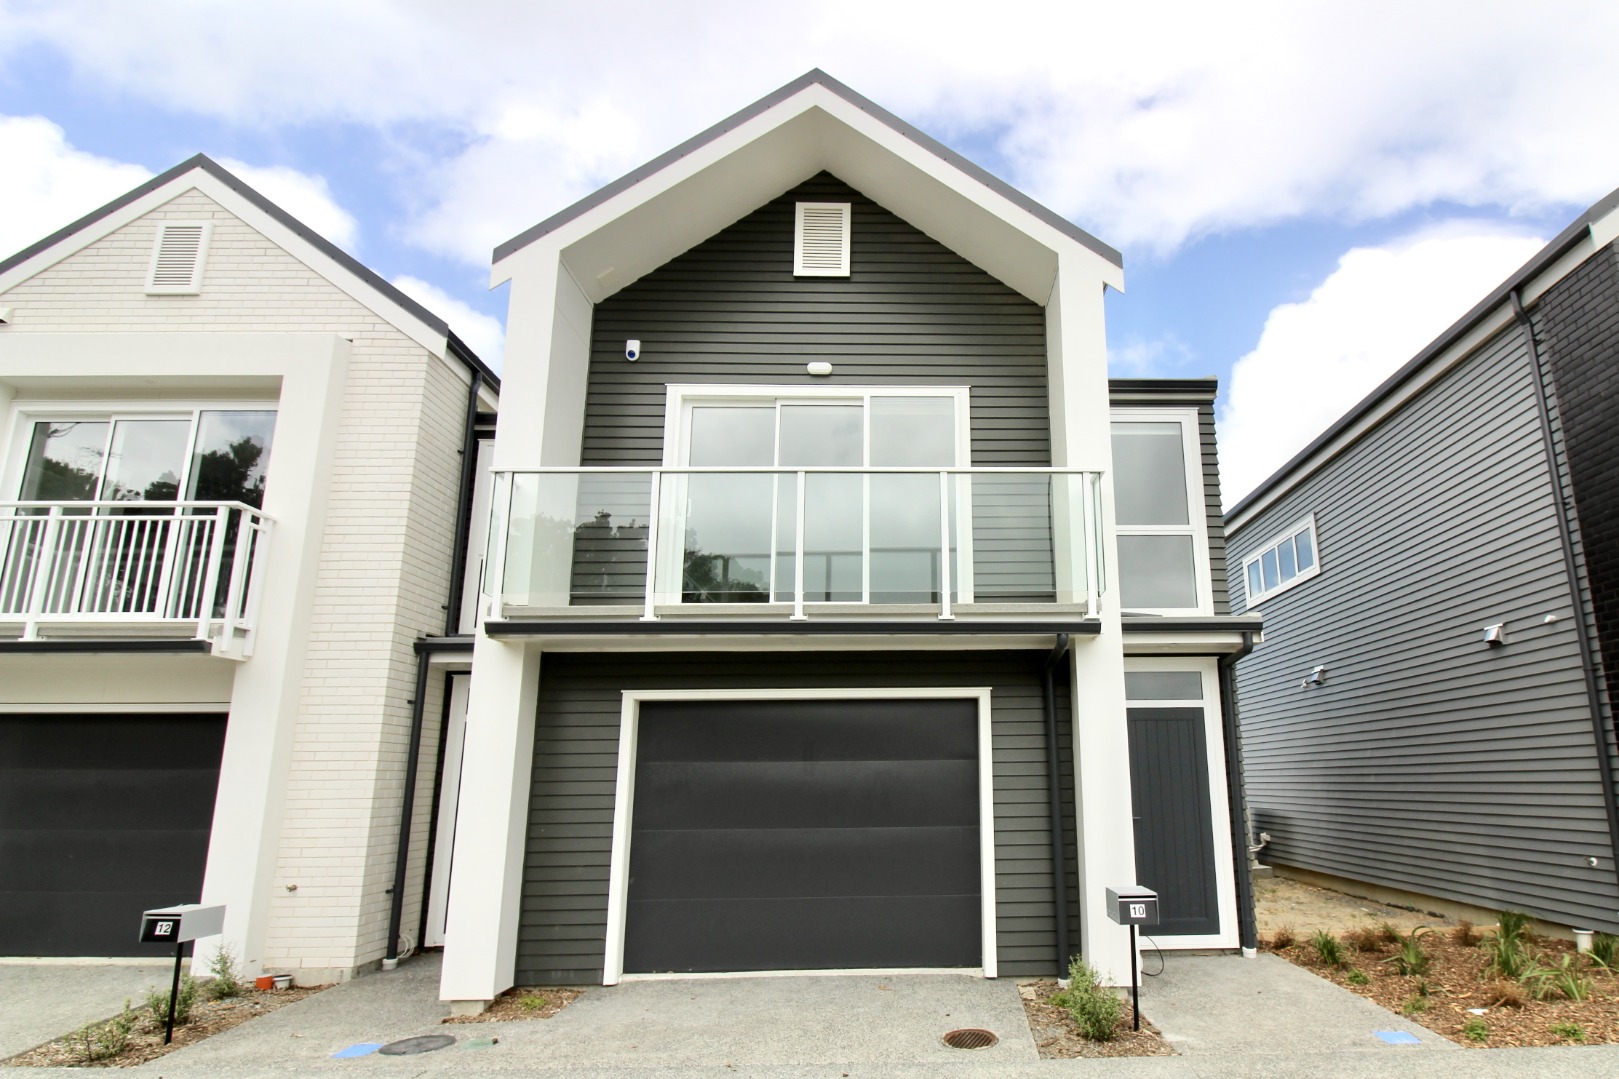 Real Estate For Rent Houses & Apartments : Come home to Kopua, Porirua, Wellington